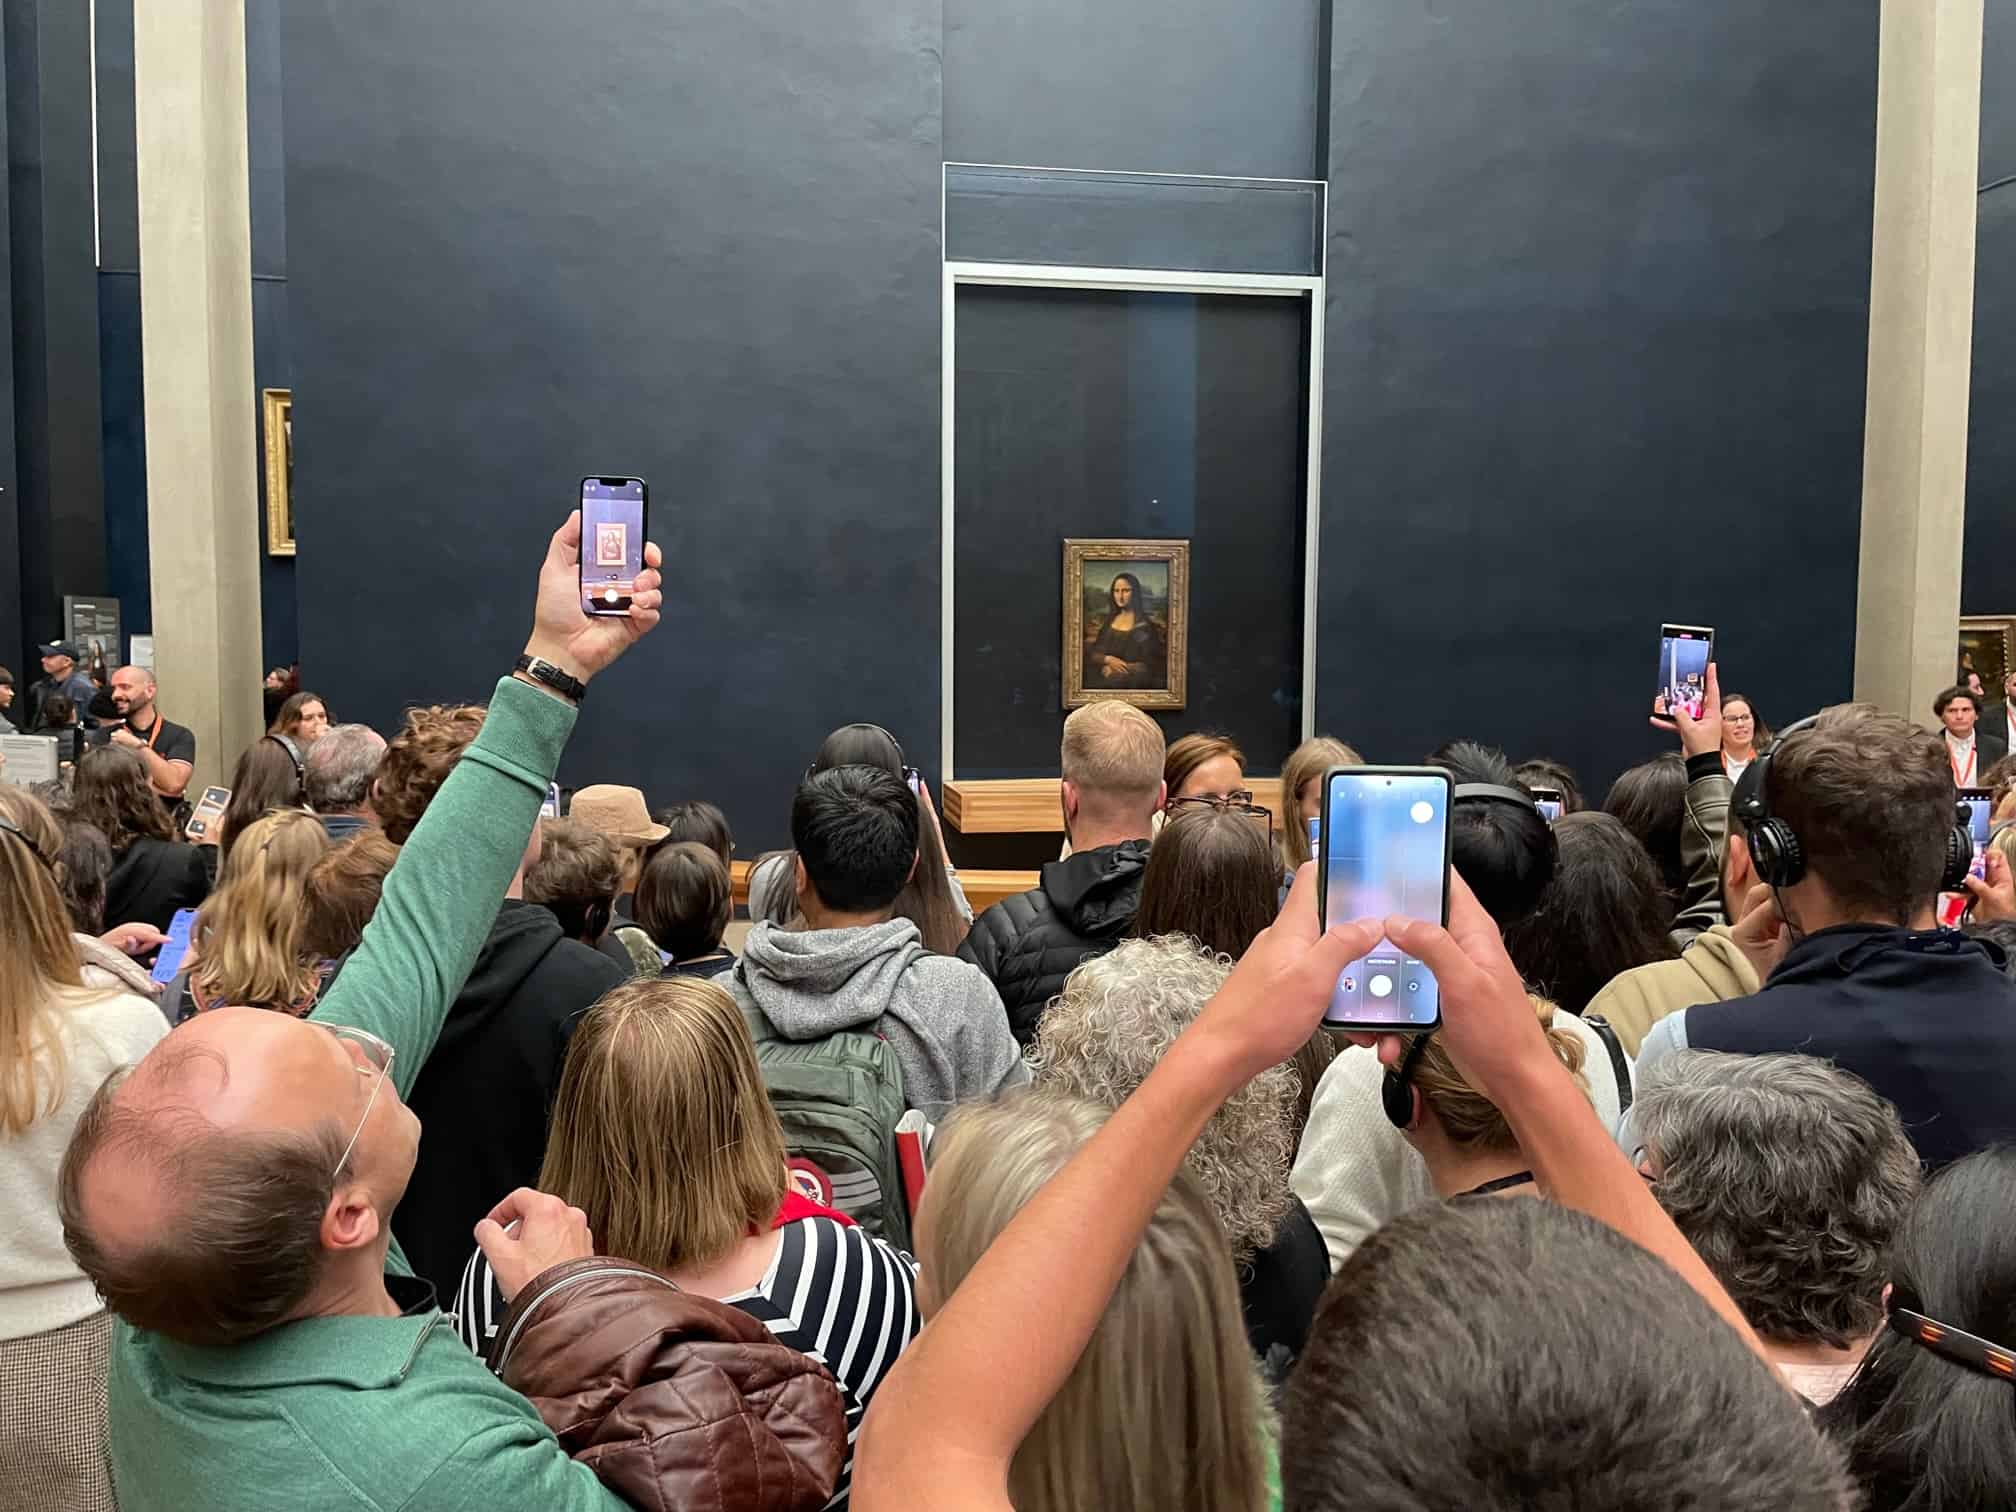 Mona Lisa always draws a crowd